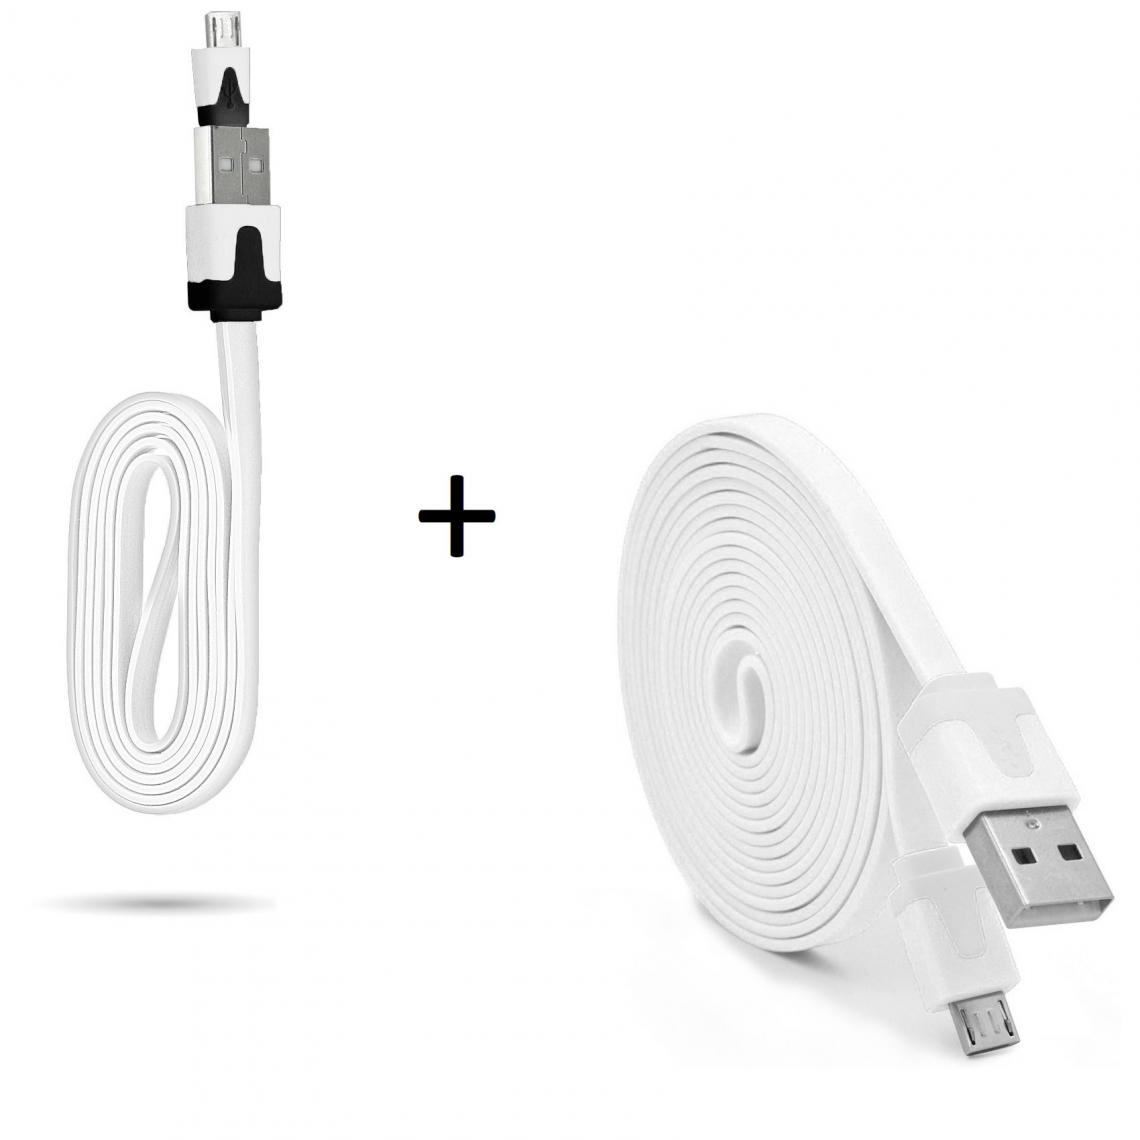 Shot - Pack Chargeur pour HUAWEI Y5 2019 Smartphone Micro USB (Cable Noodle 3m + Cable Noodle 1m) Android (BLANC) - Chargeur secteur téléphone